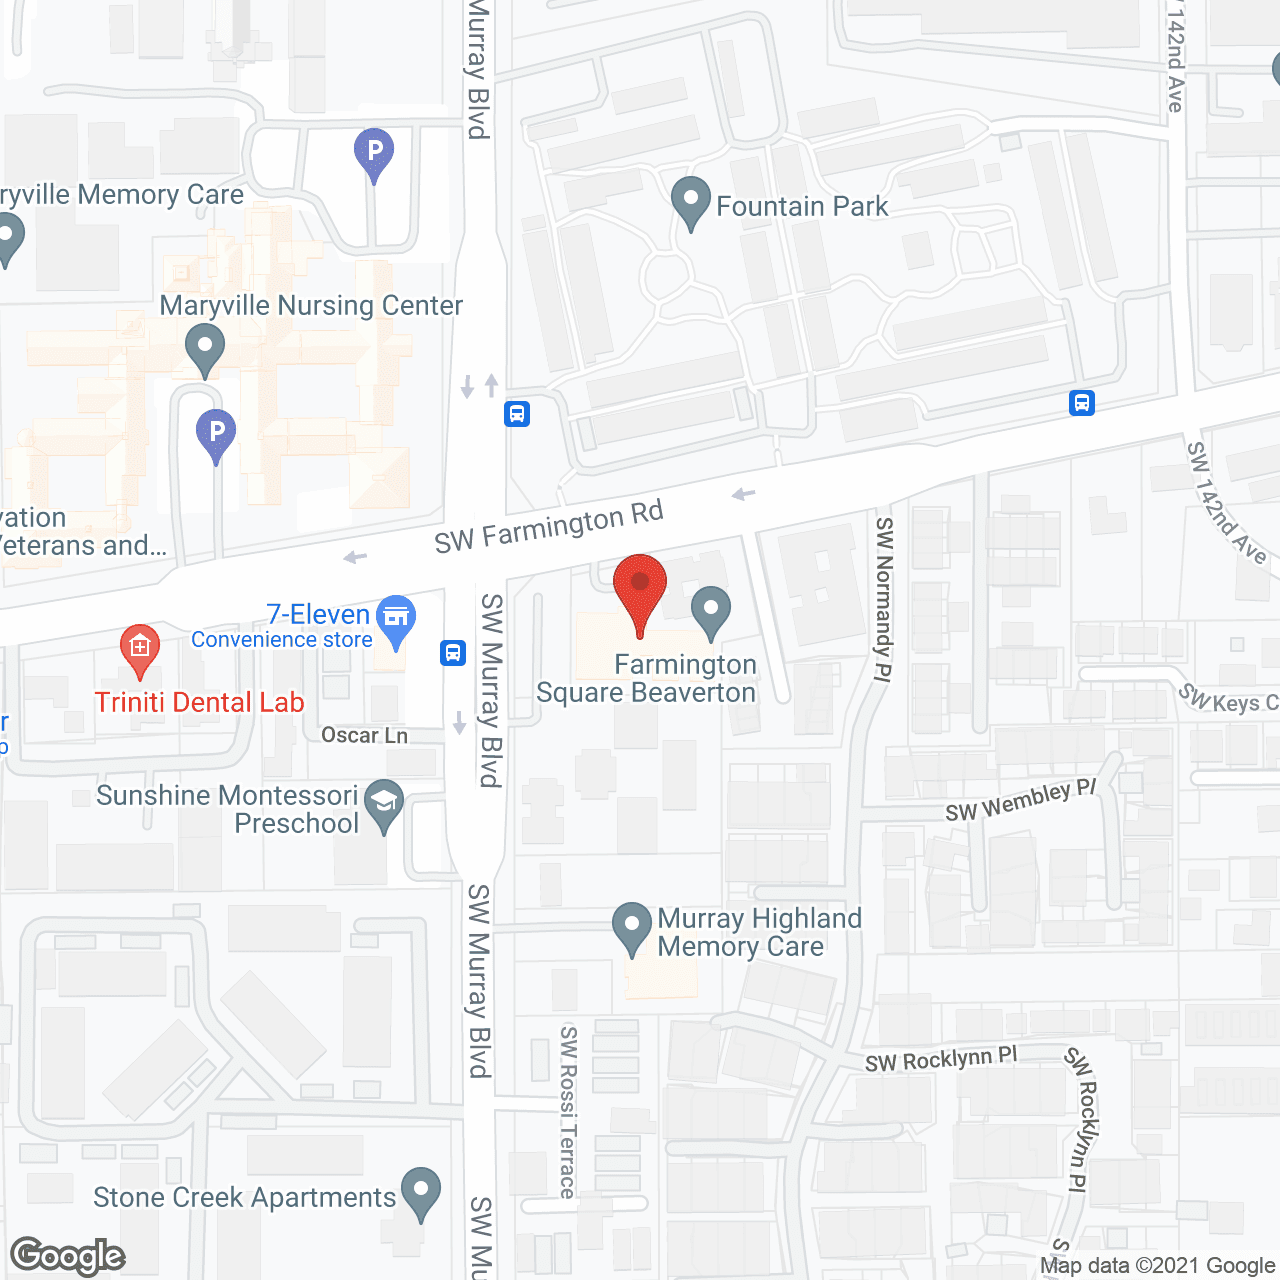 Farmington Square Beaverton in google map